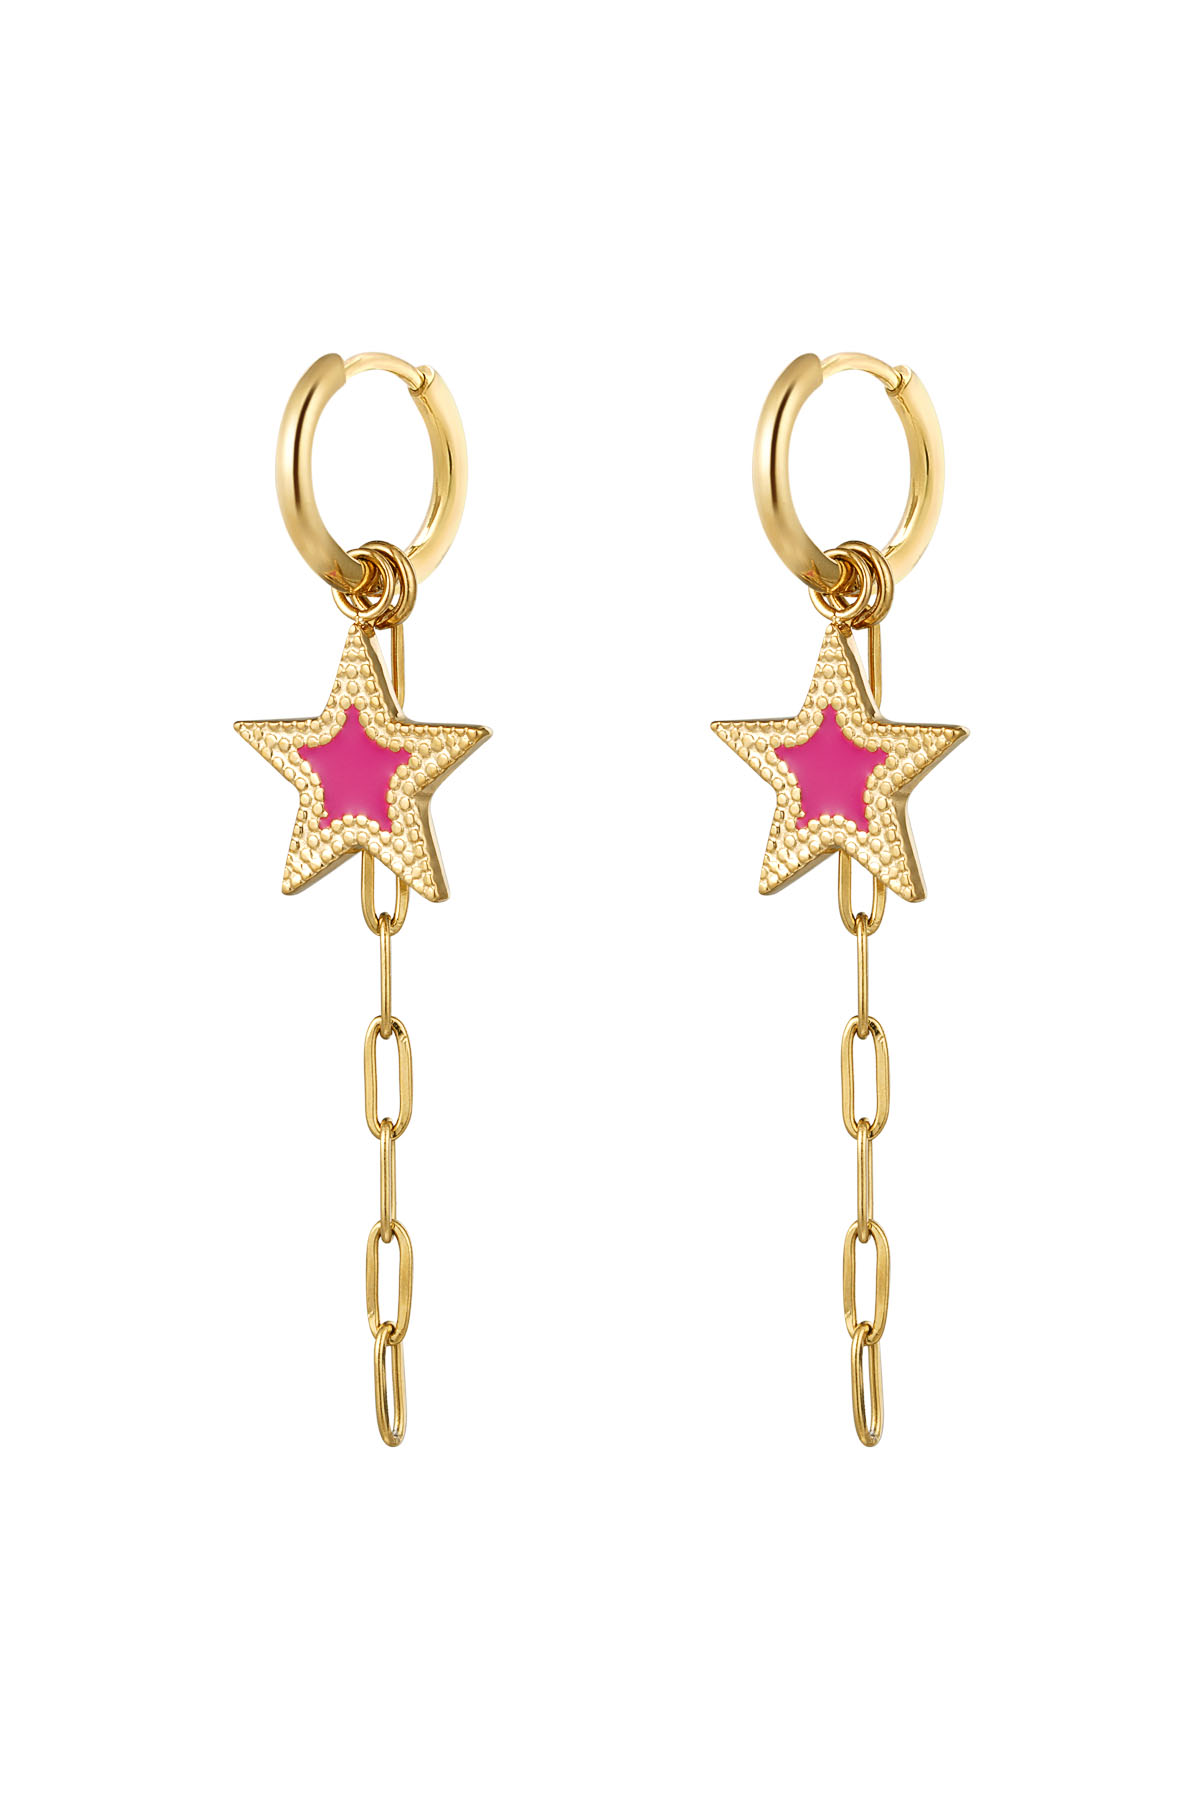 orecchini con stella e collana rosa - oro